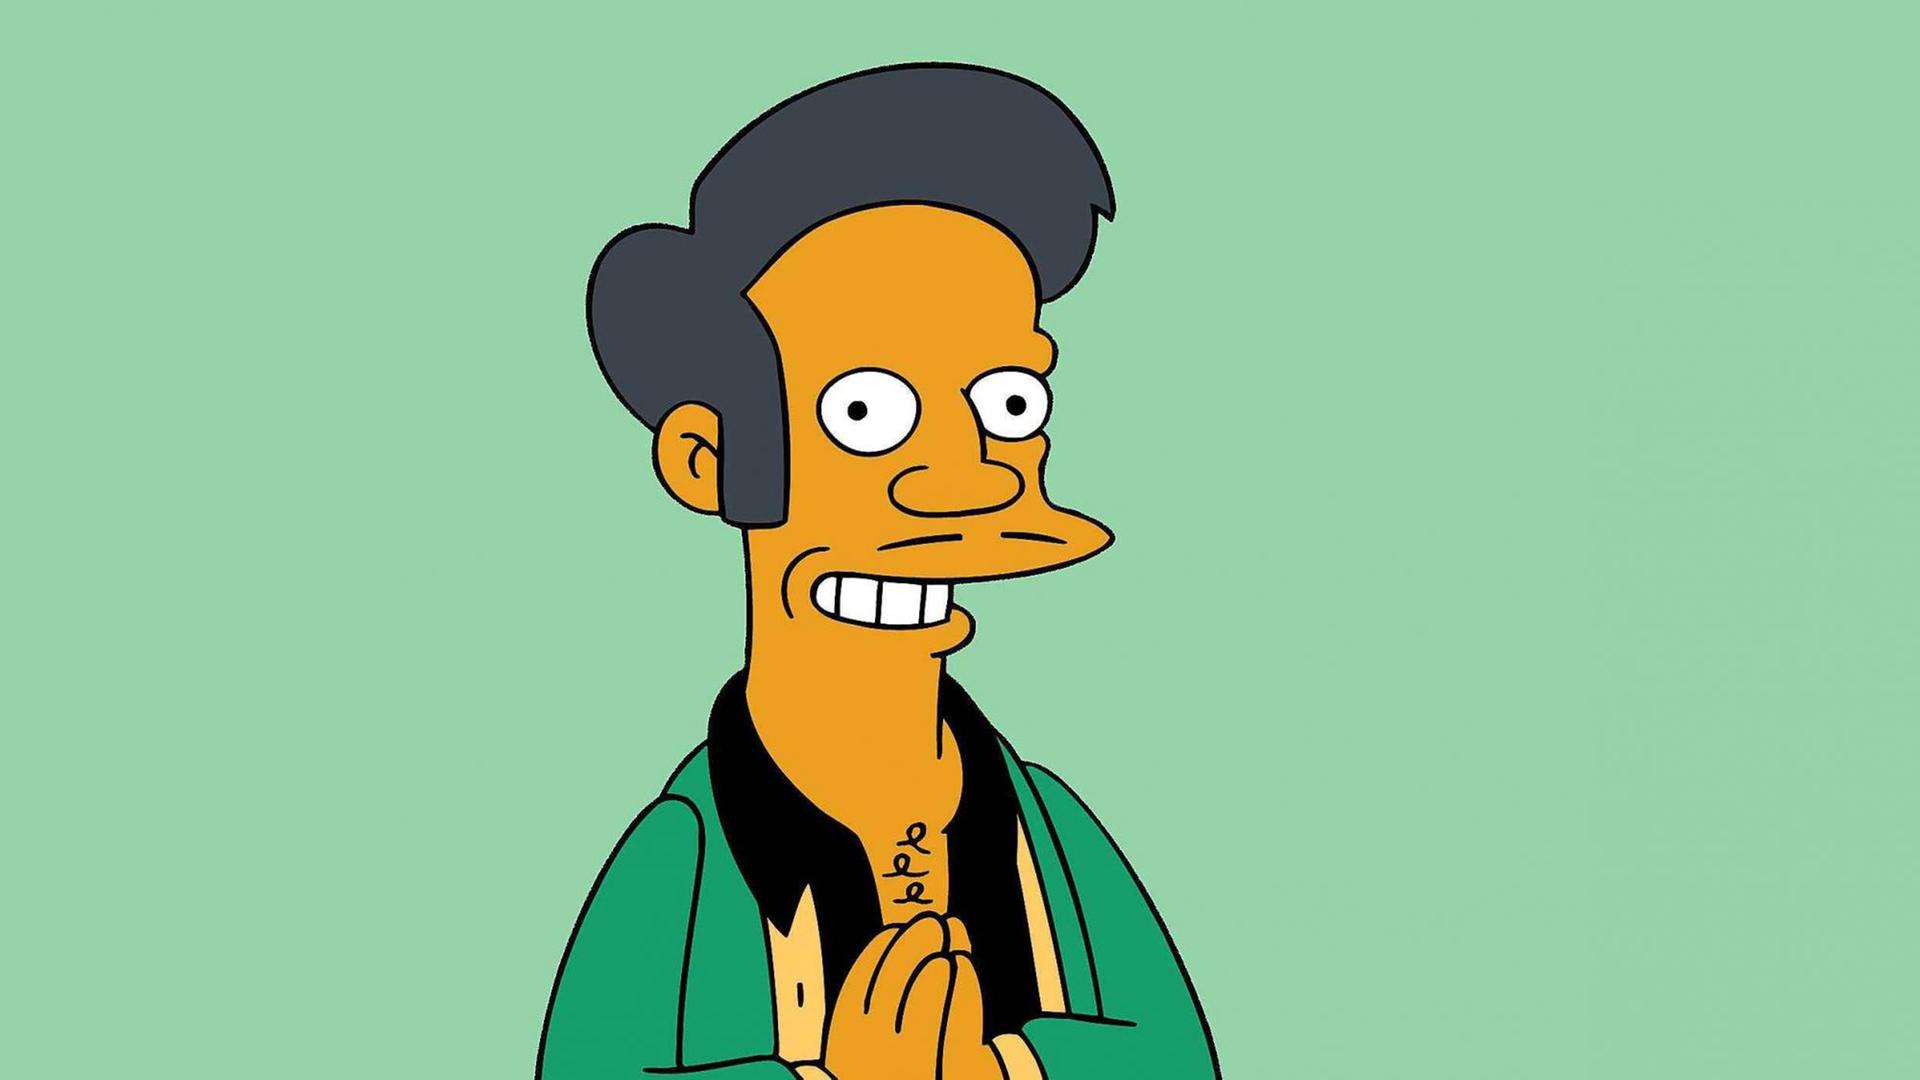 Die Simpsons-Figur Apu mit gefalteten Händen vor grünem Hintergrund.